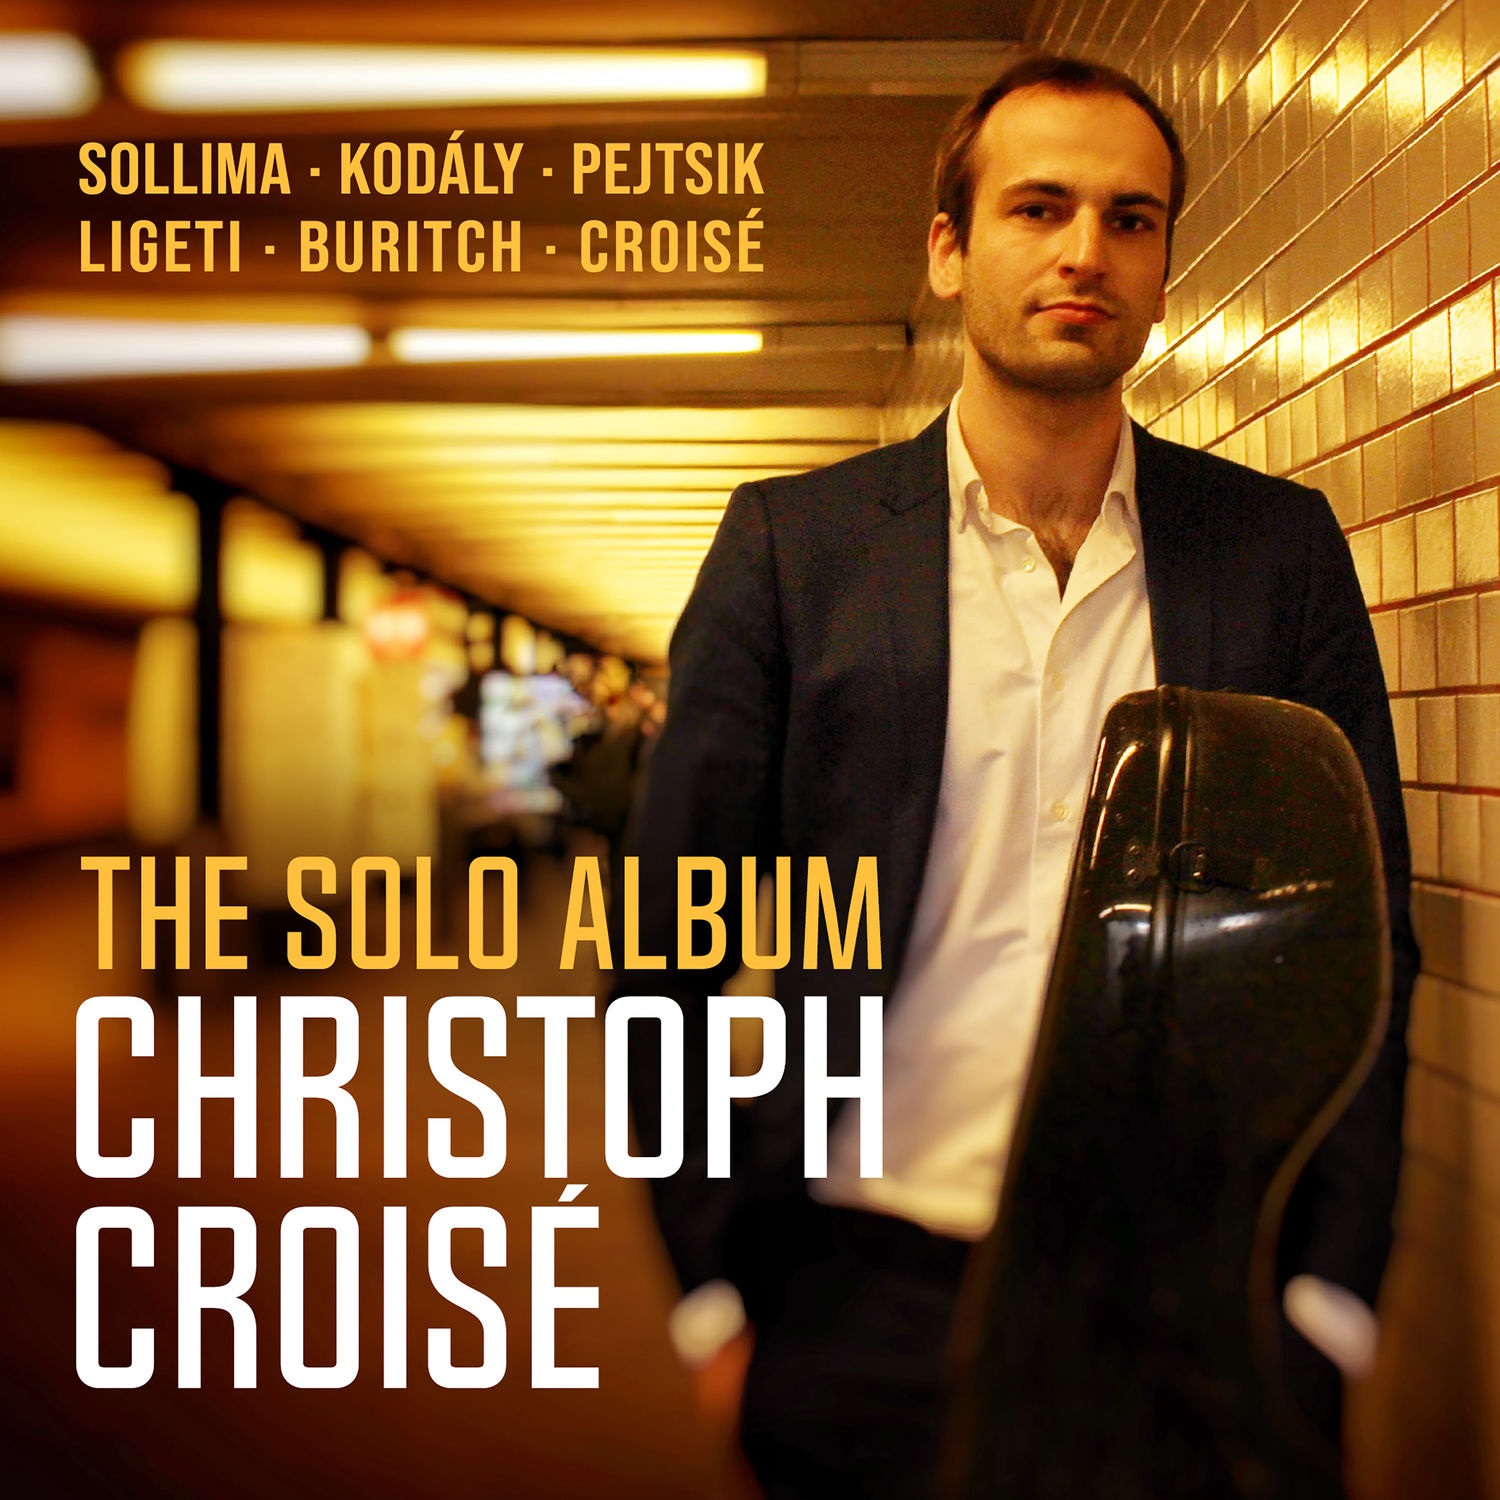 Christoph Croise - The Solo Album (2021) [FLAC 24bit/96kHz]